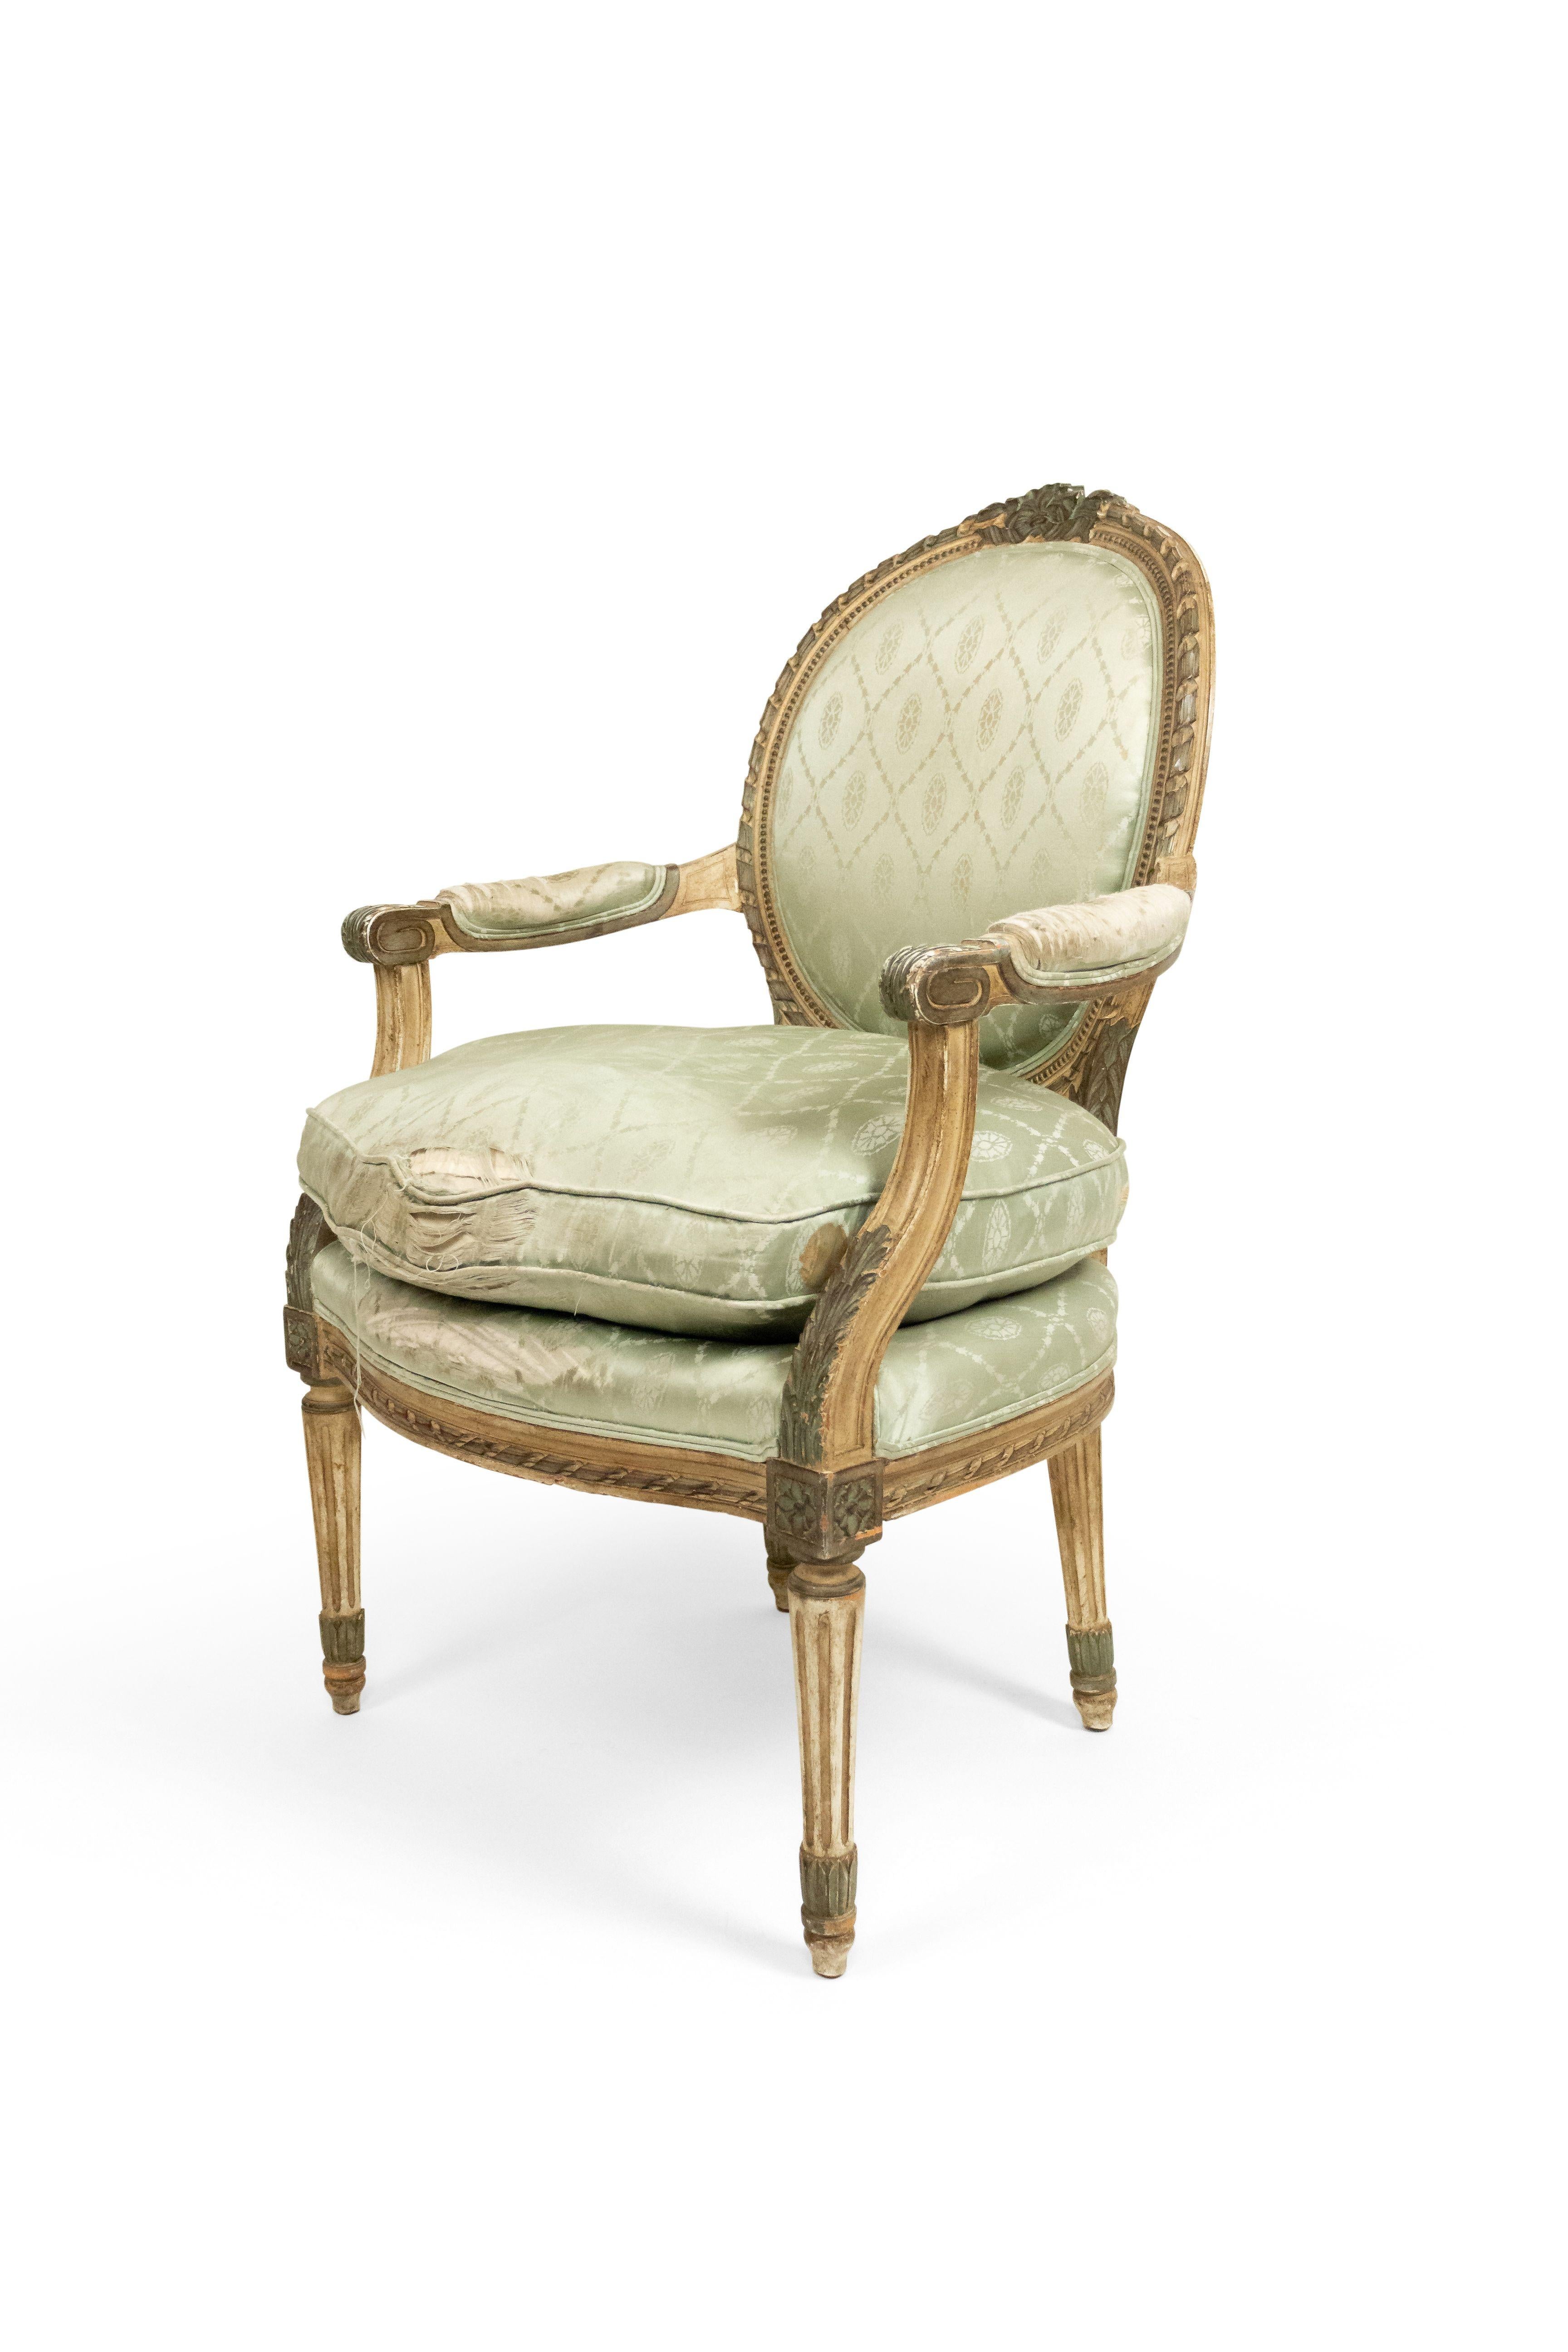 Paire de fauteuils français de style Louis XVI (19e-20e siècle), peints en gris, à dossier ovale et tapissés de soie vert pâle.